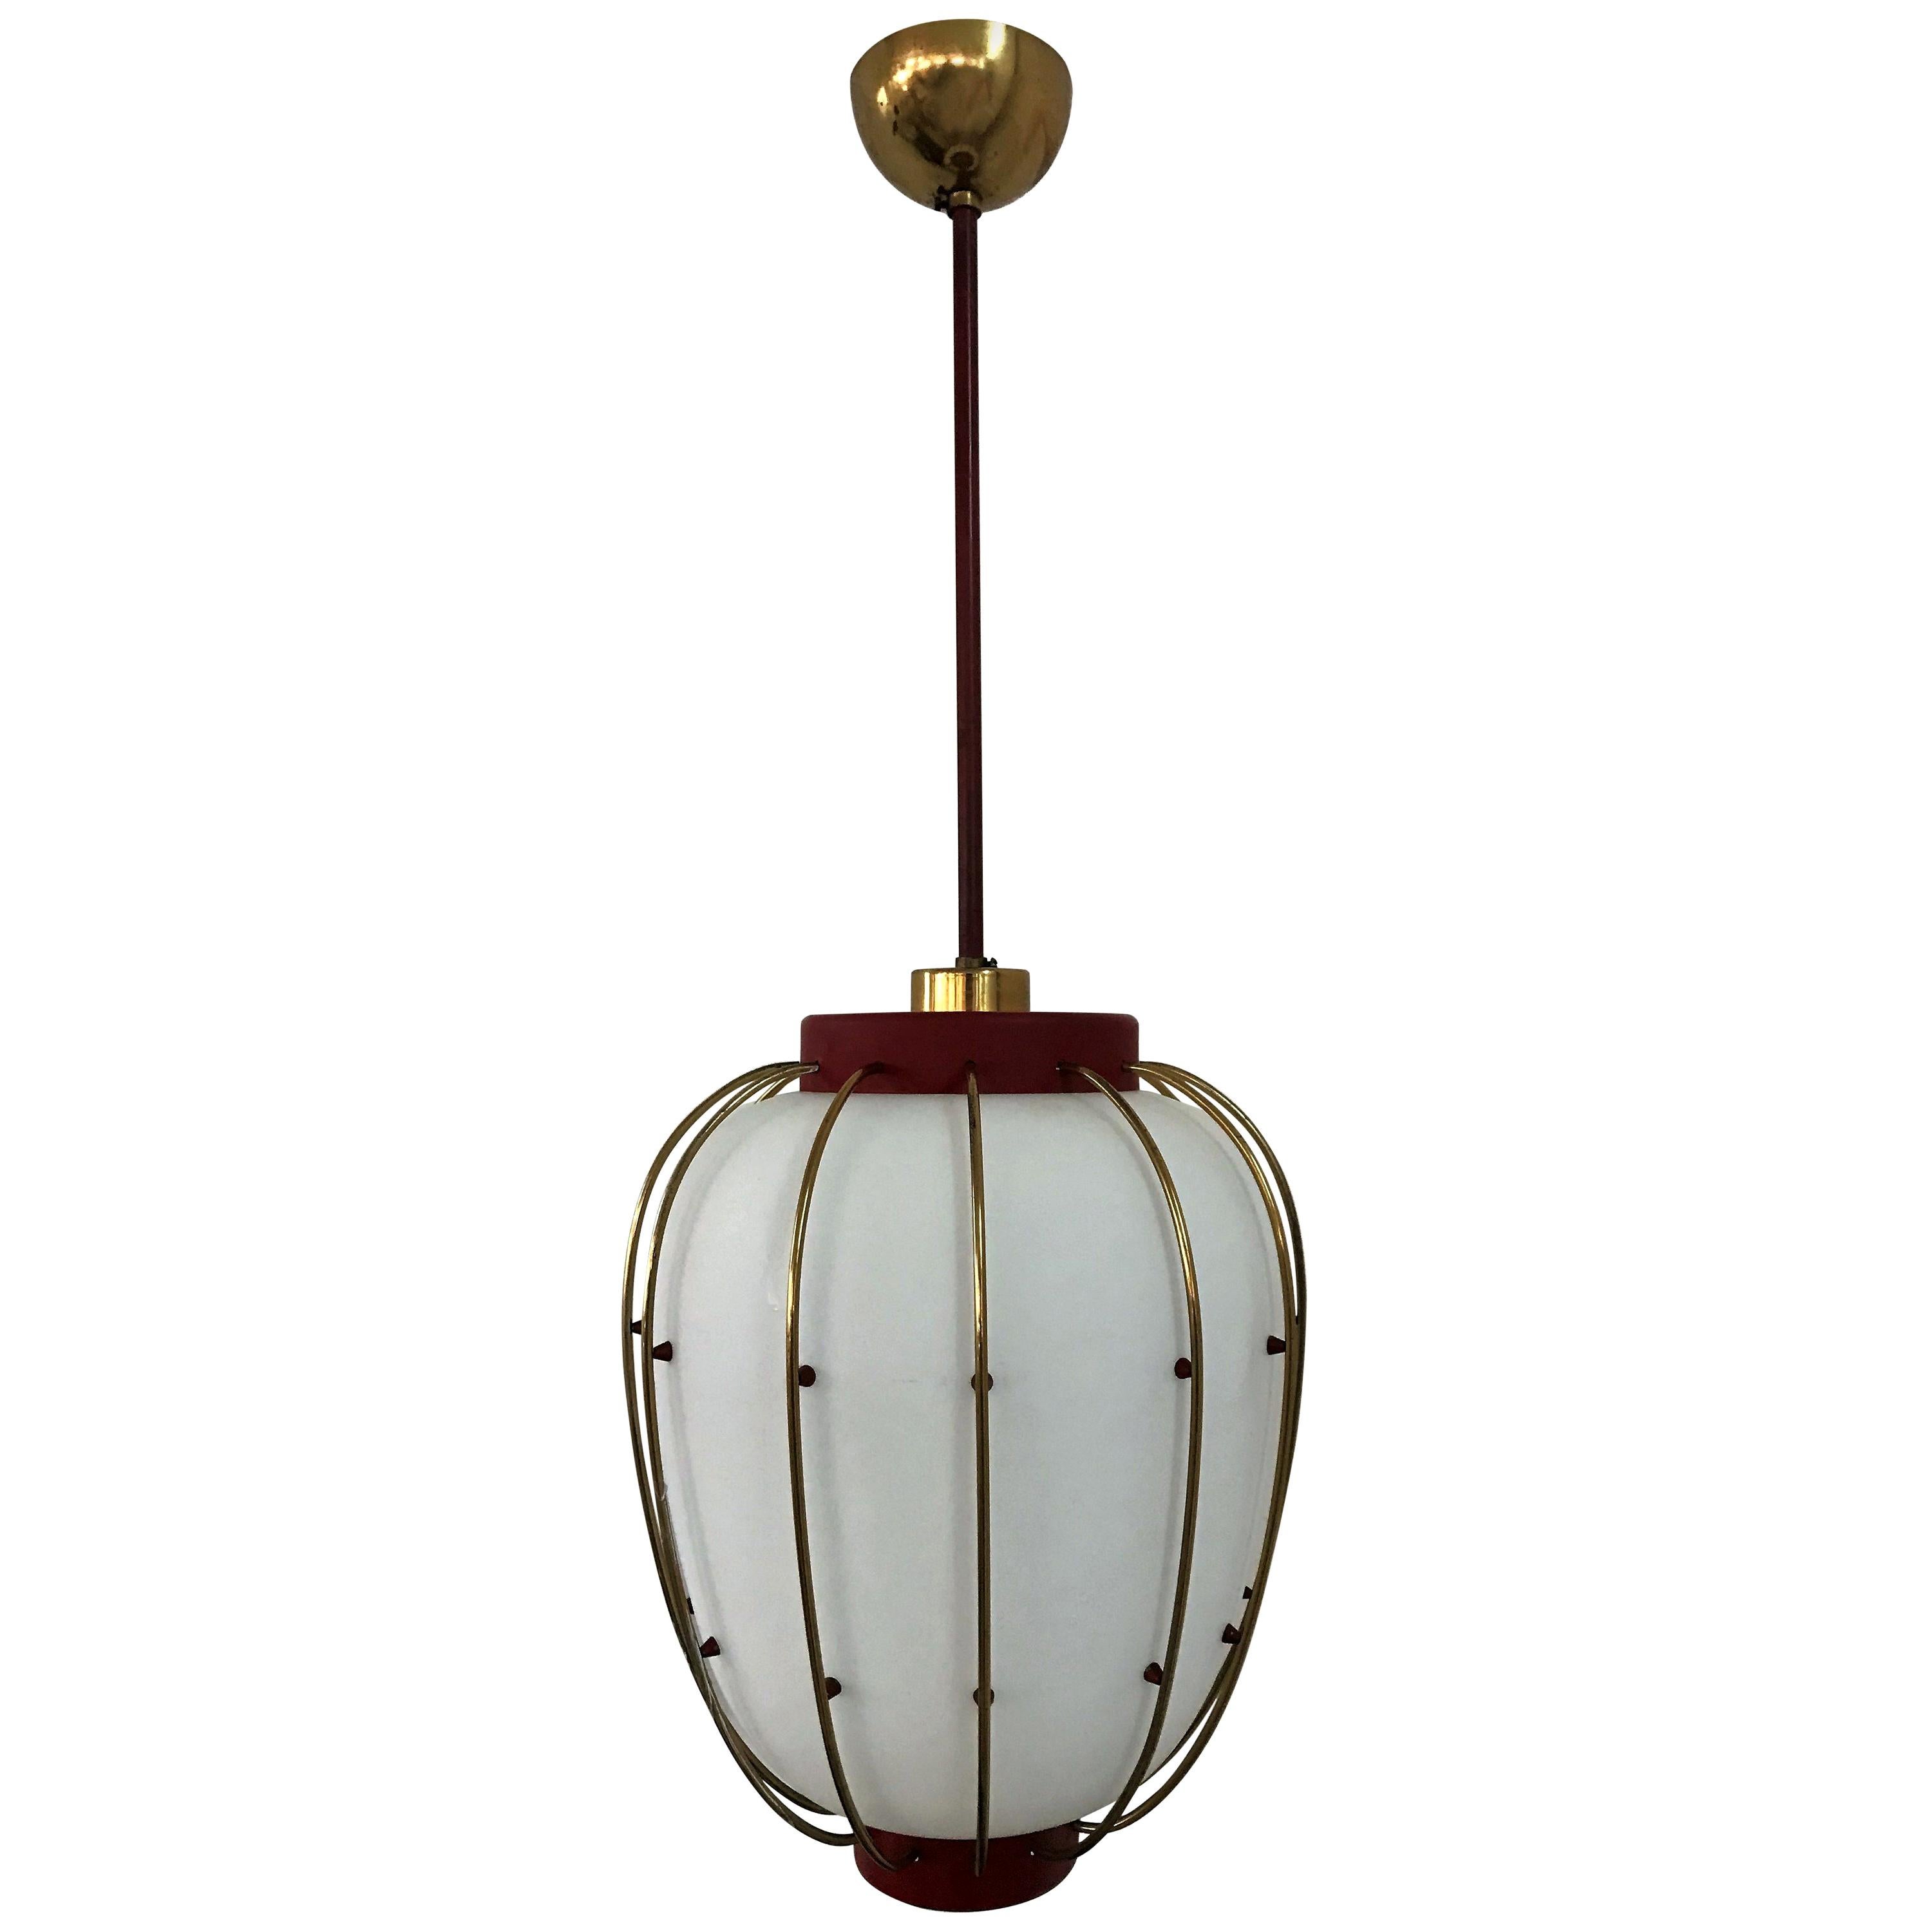 3 Mid-Century Modern Lantern in Brass and Opaline Glass, 1950, Stilnovo attr.